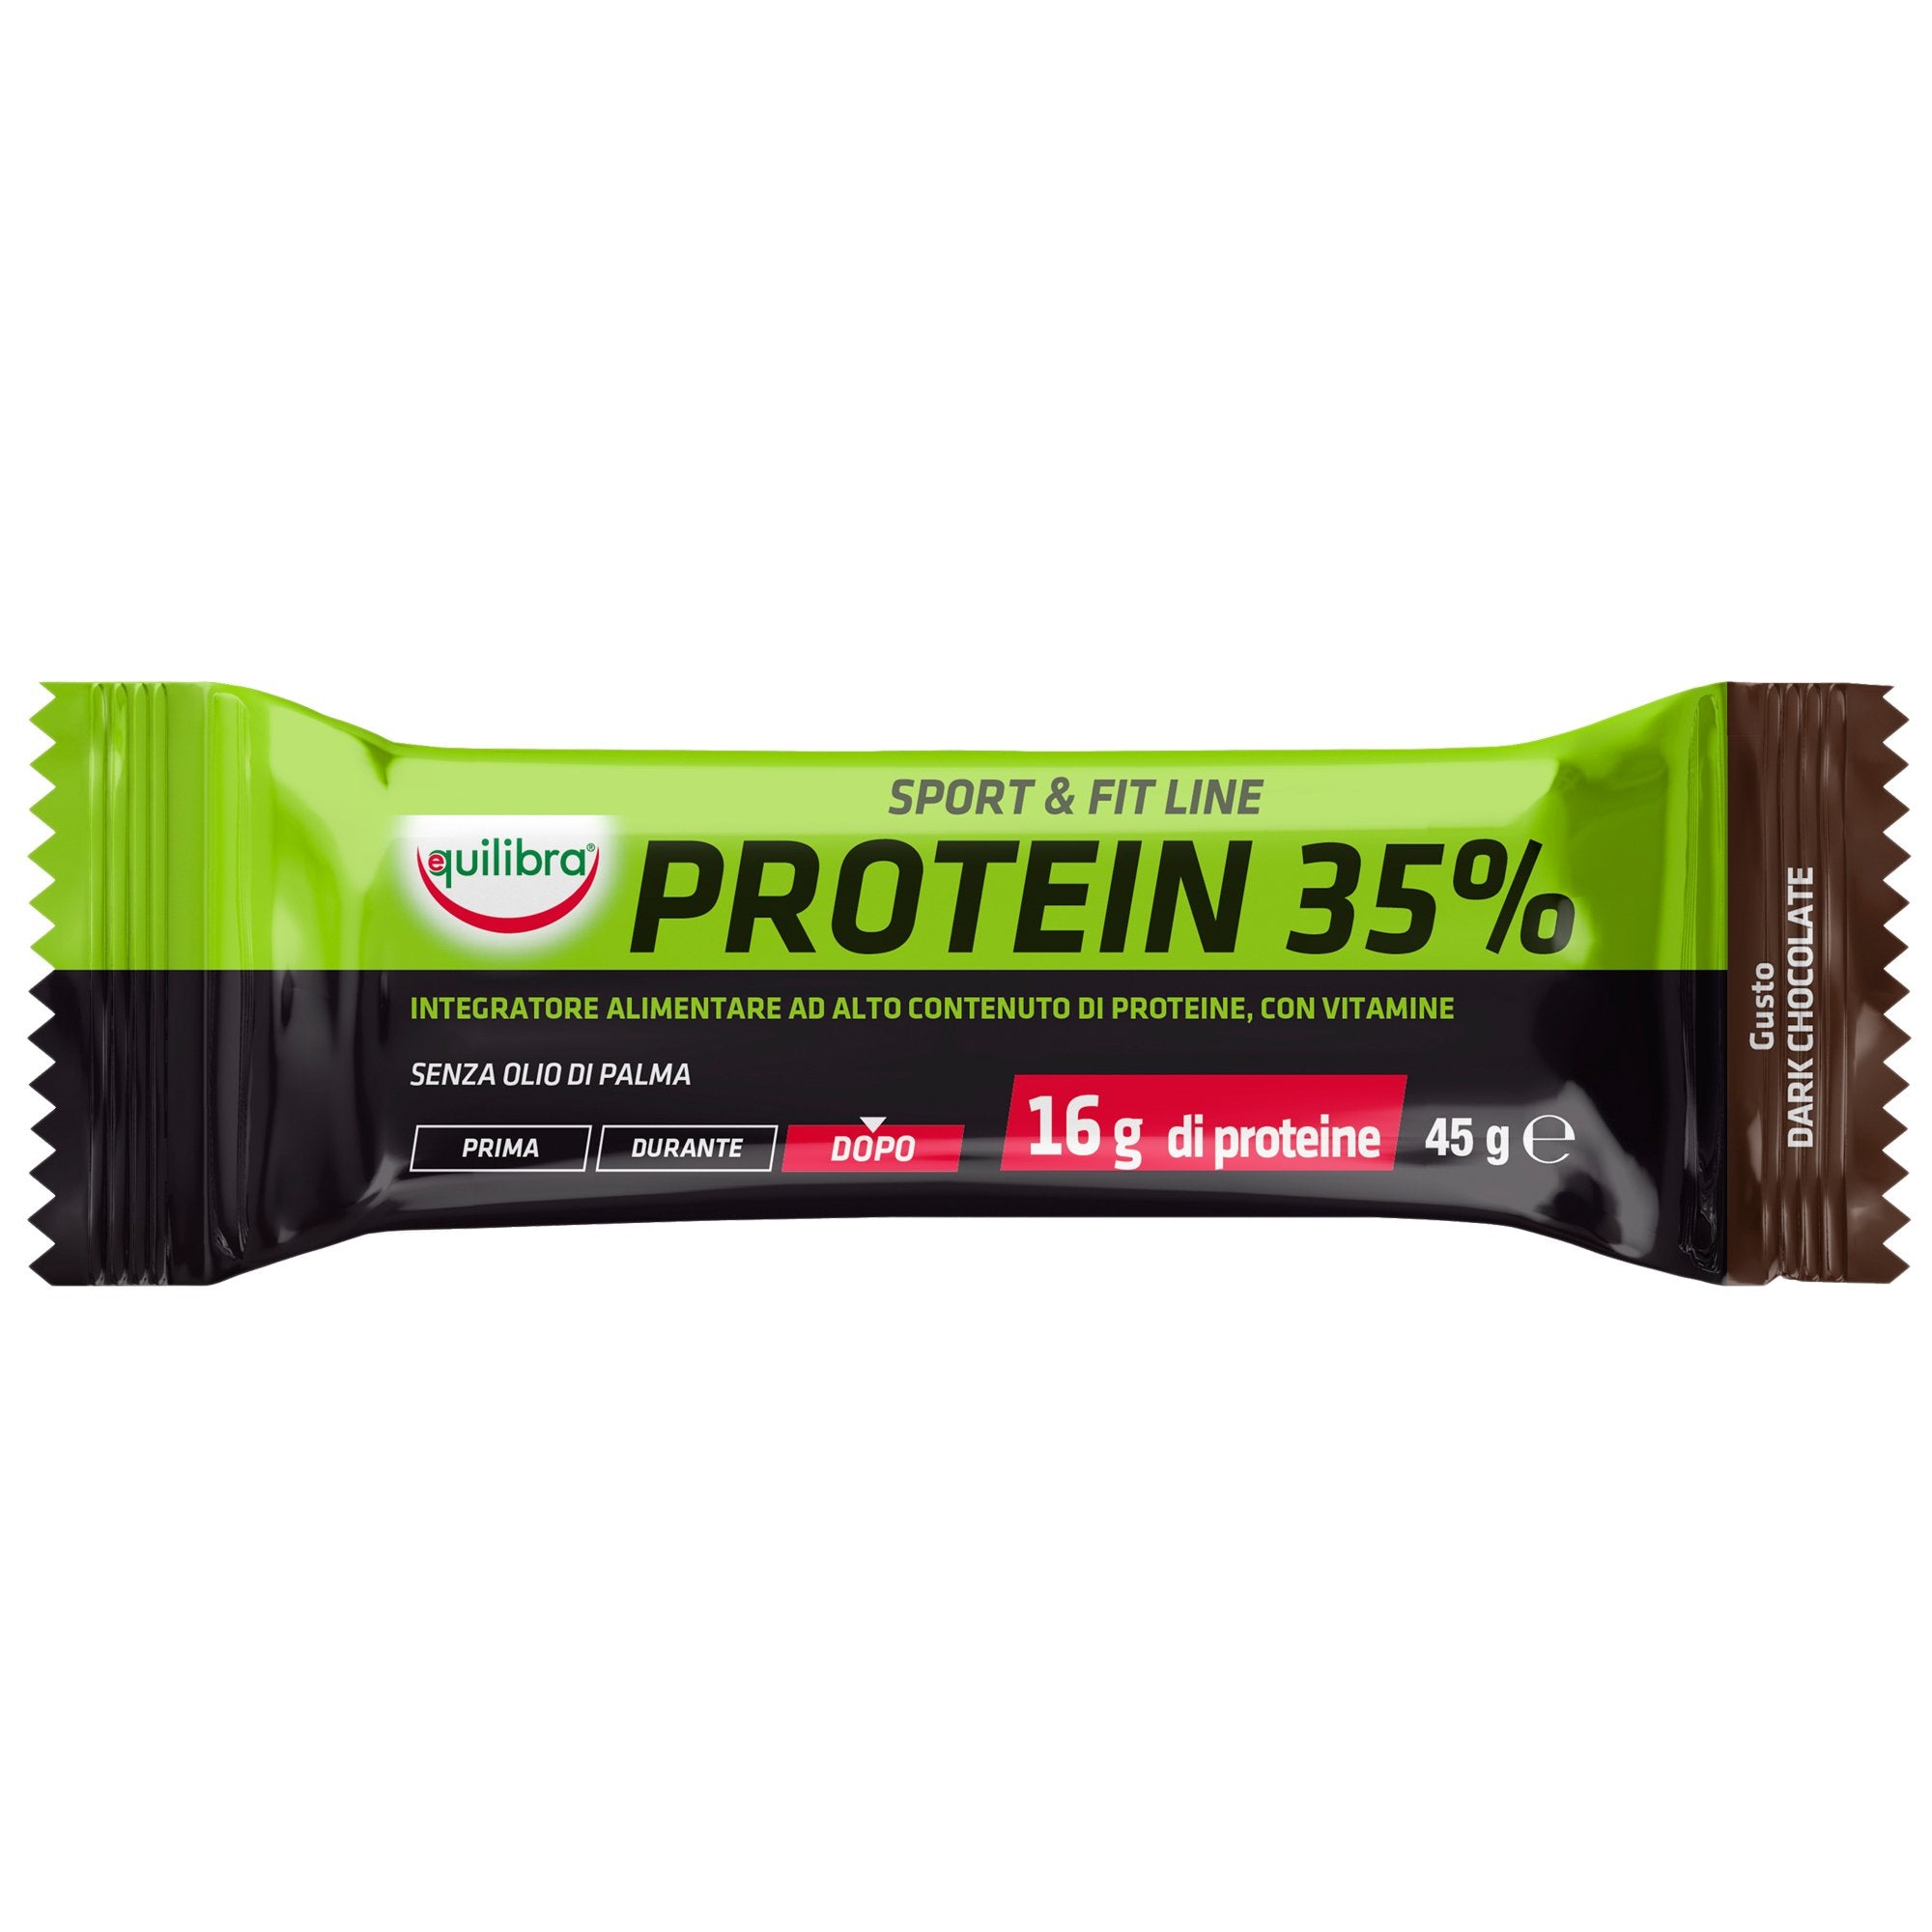 equilibra-integratore-sportfit-line-protein-35-gusto-dark-chocolate-45gr